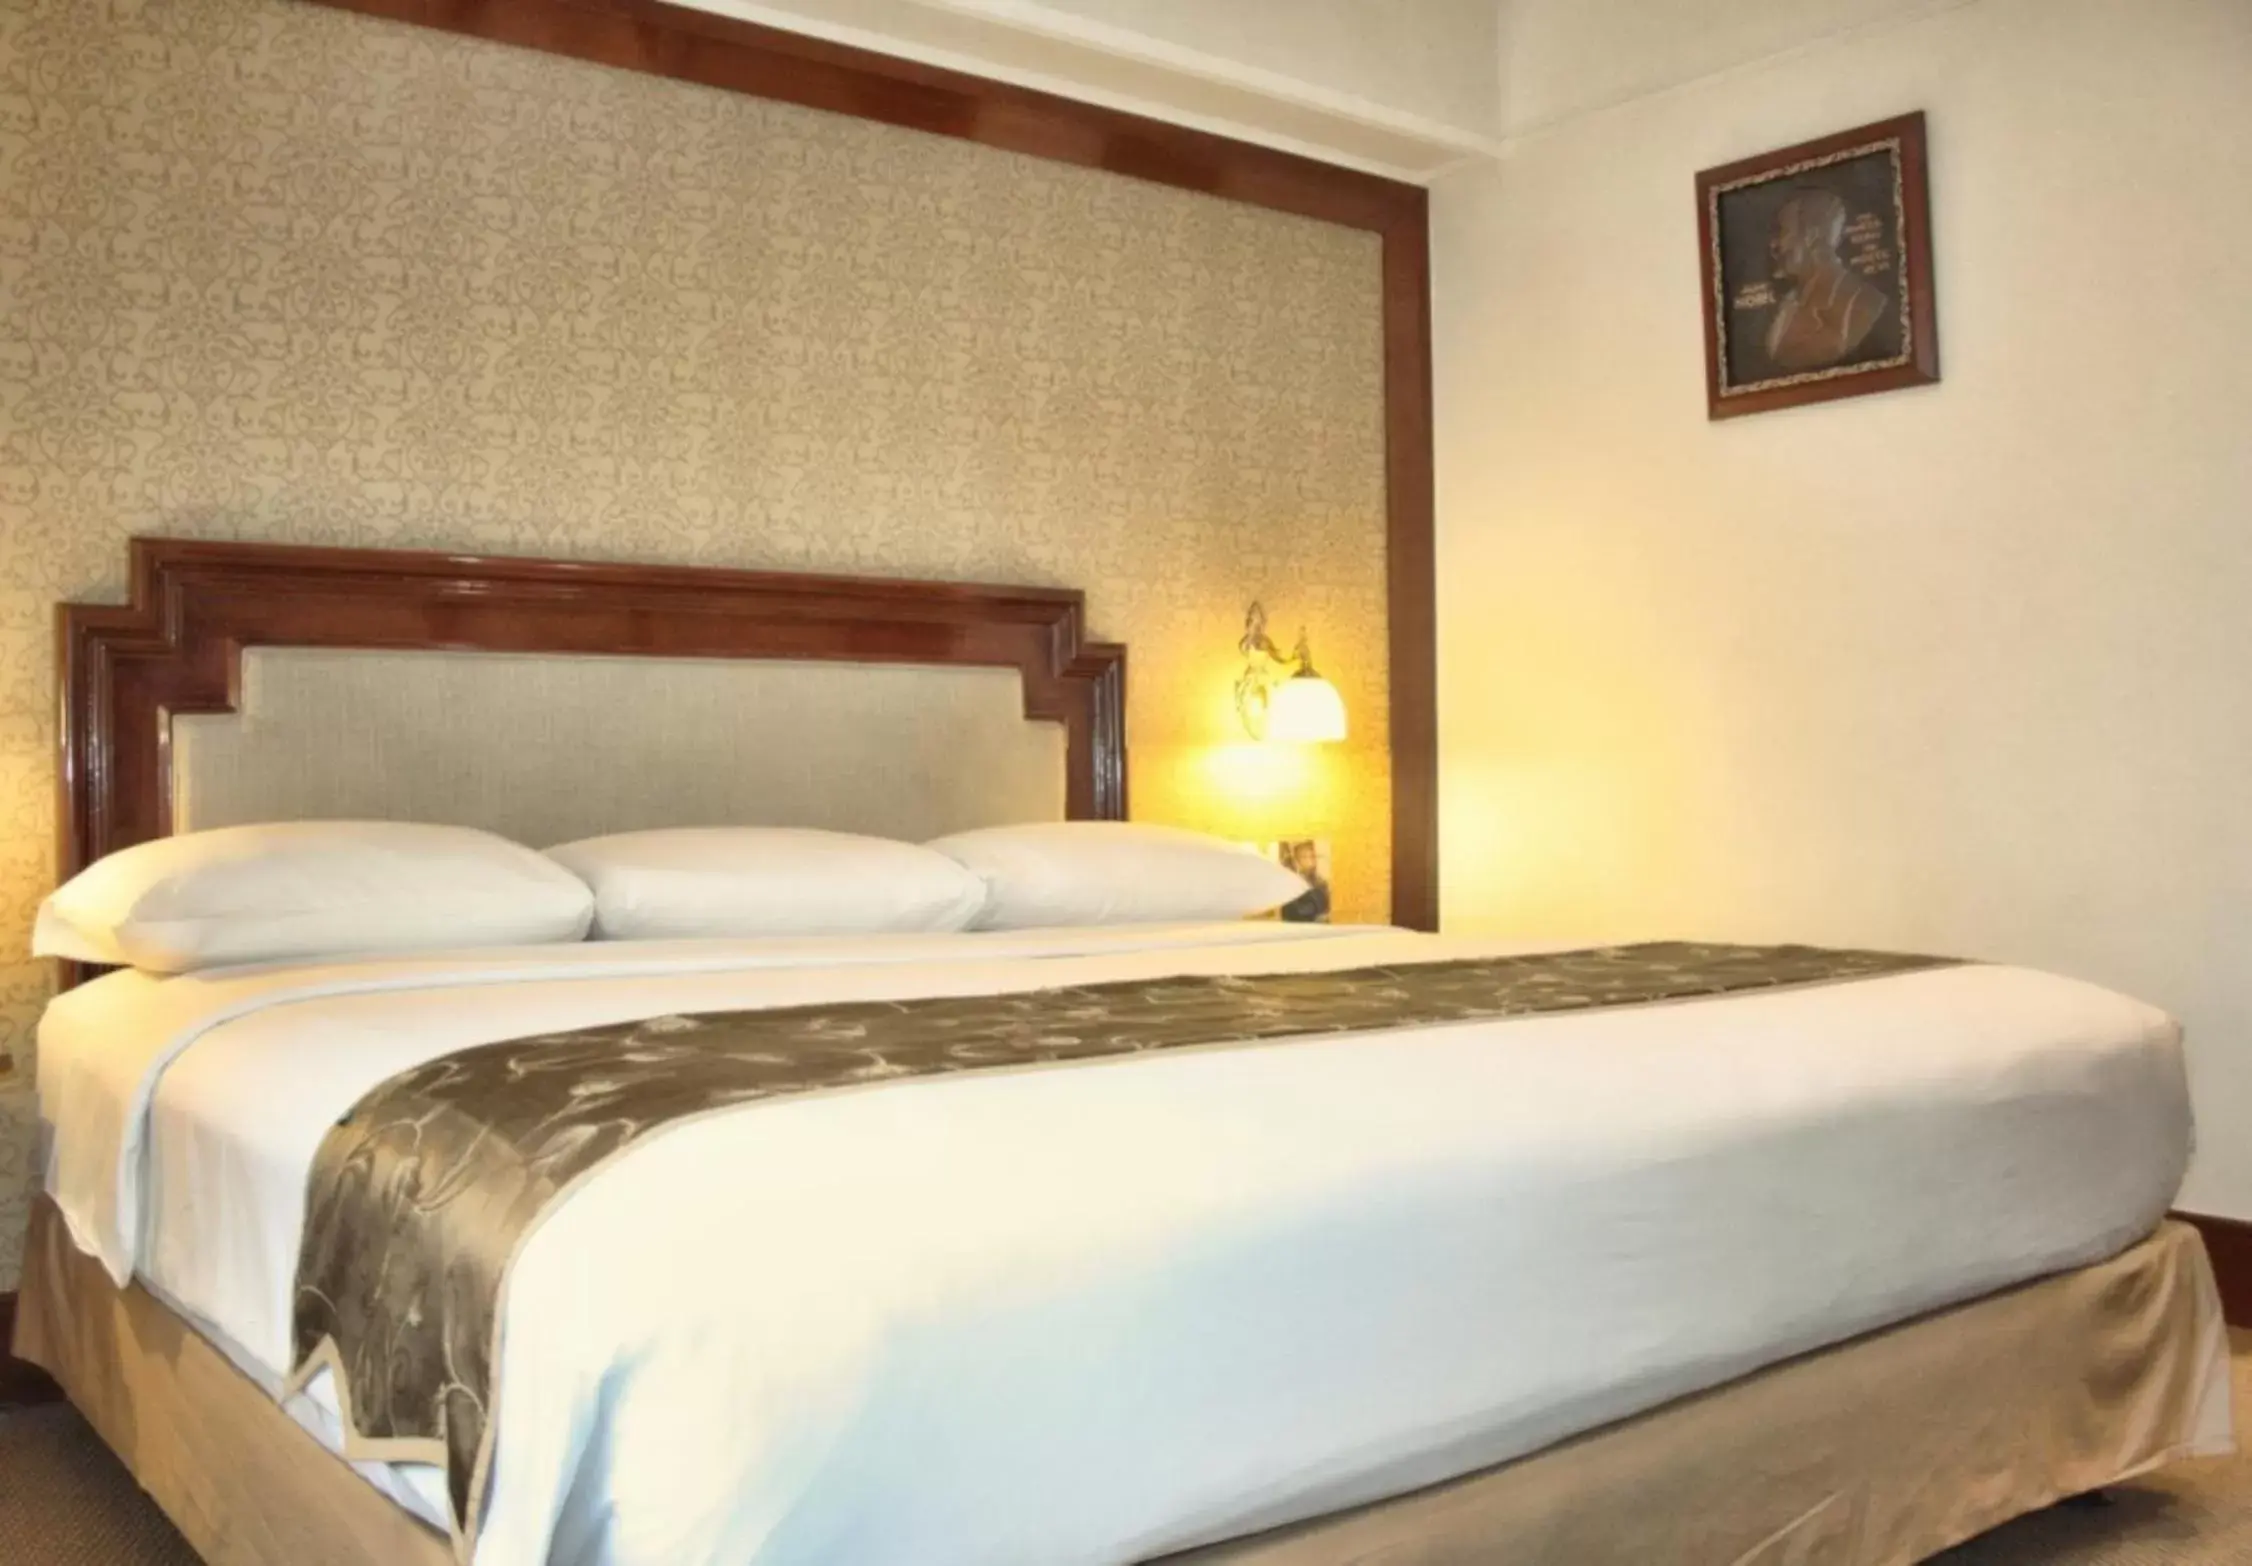 Bedroom, Bed in Golden Boutique Hotel Melawai